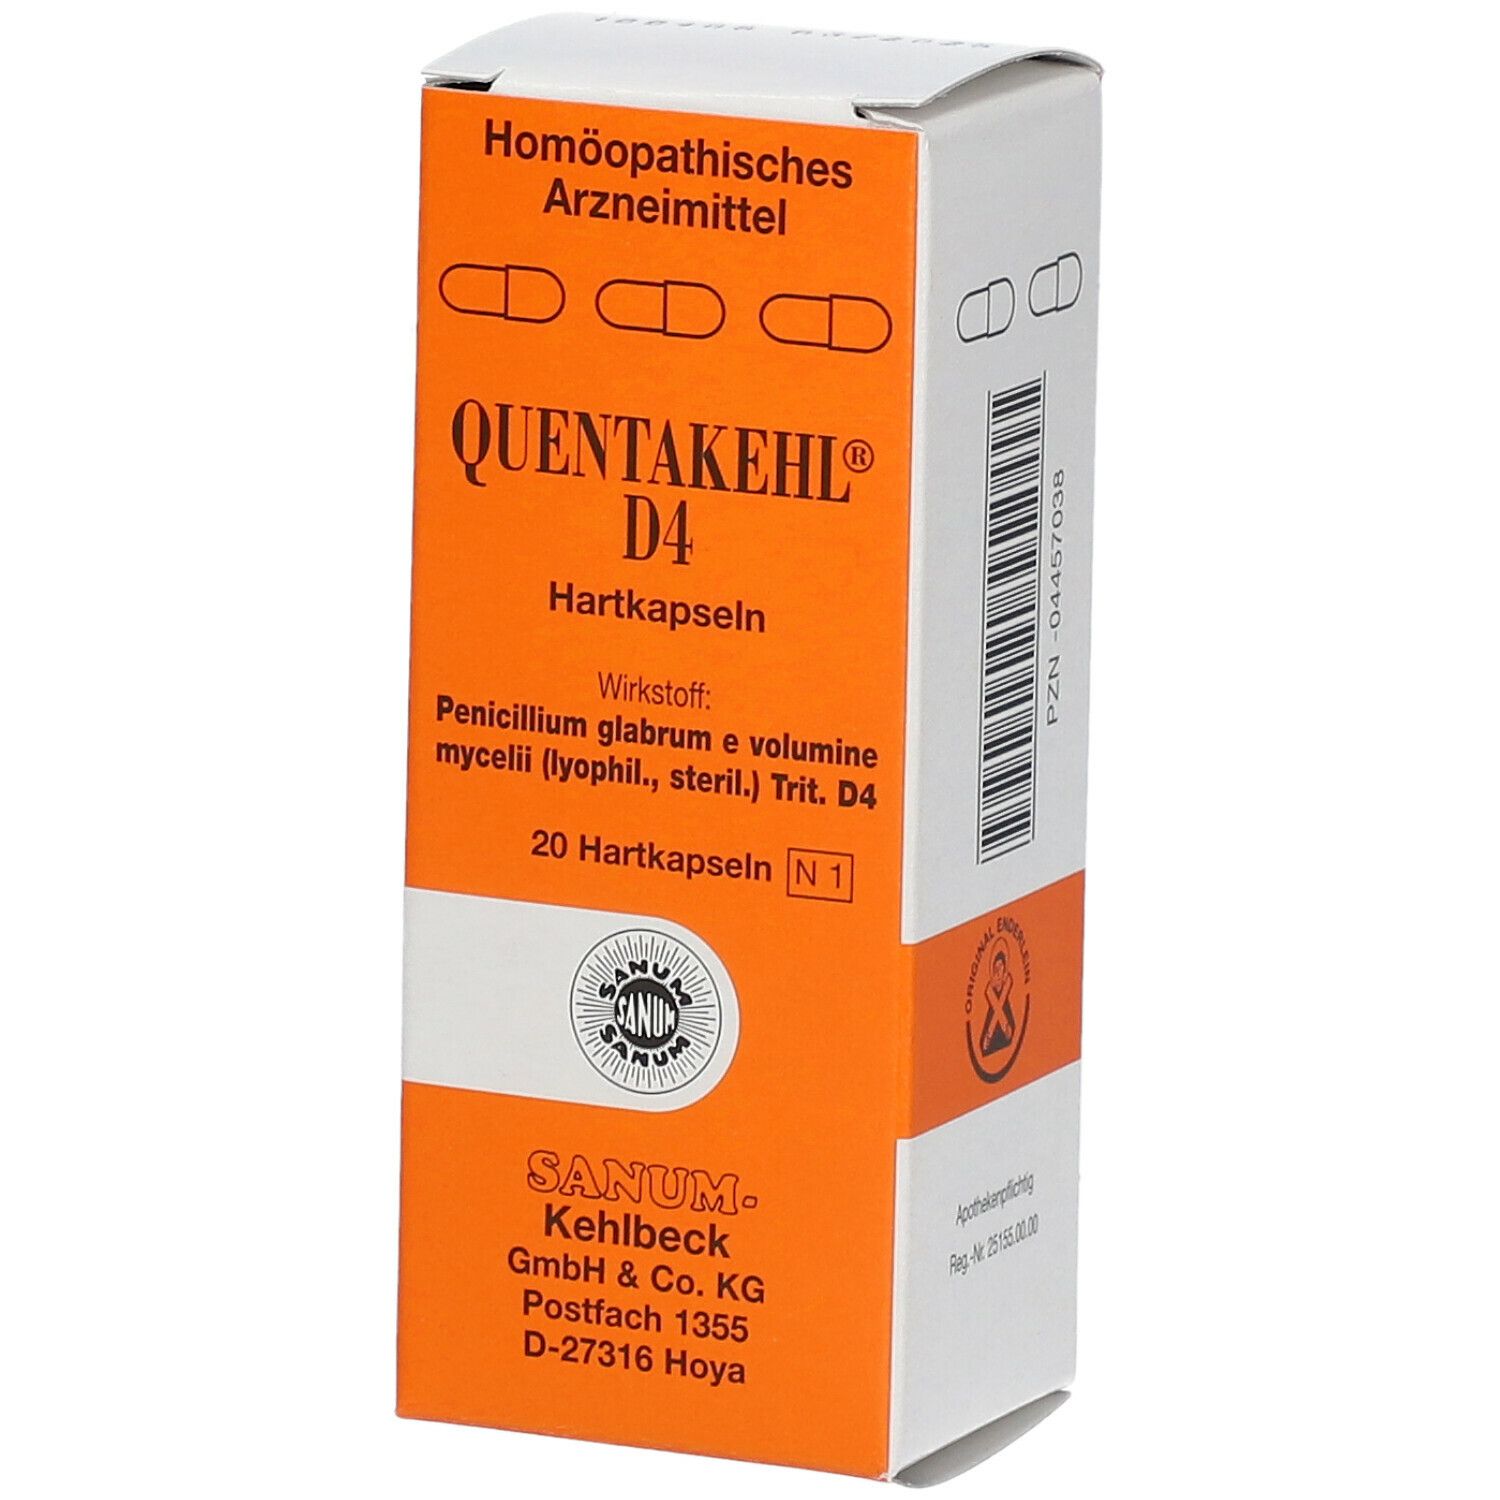 Quentakehl® D4 Kapseln